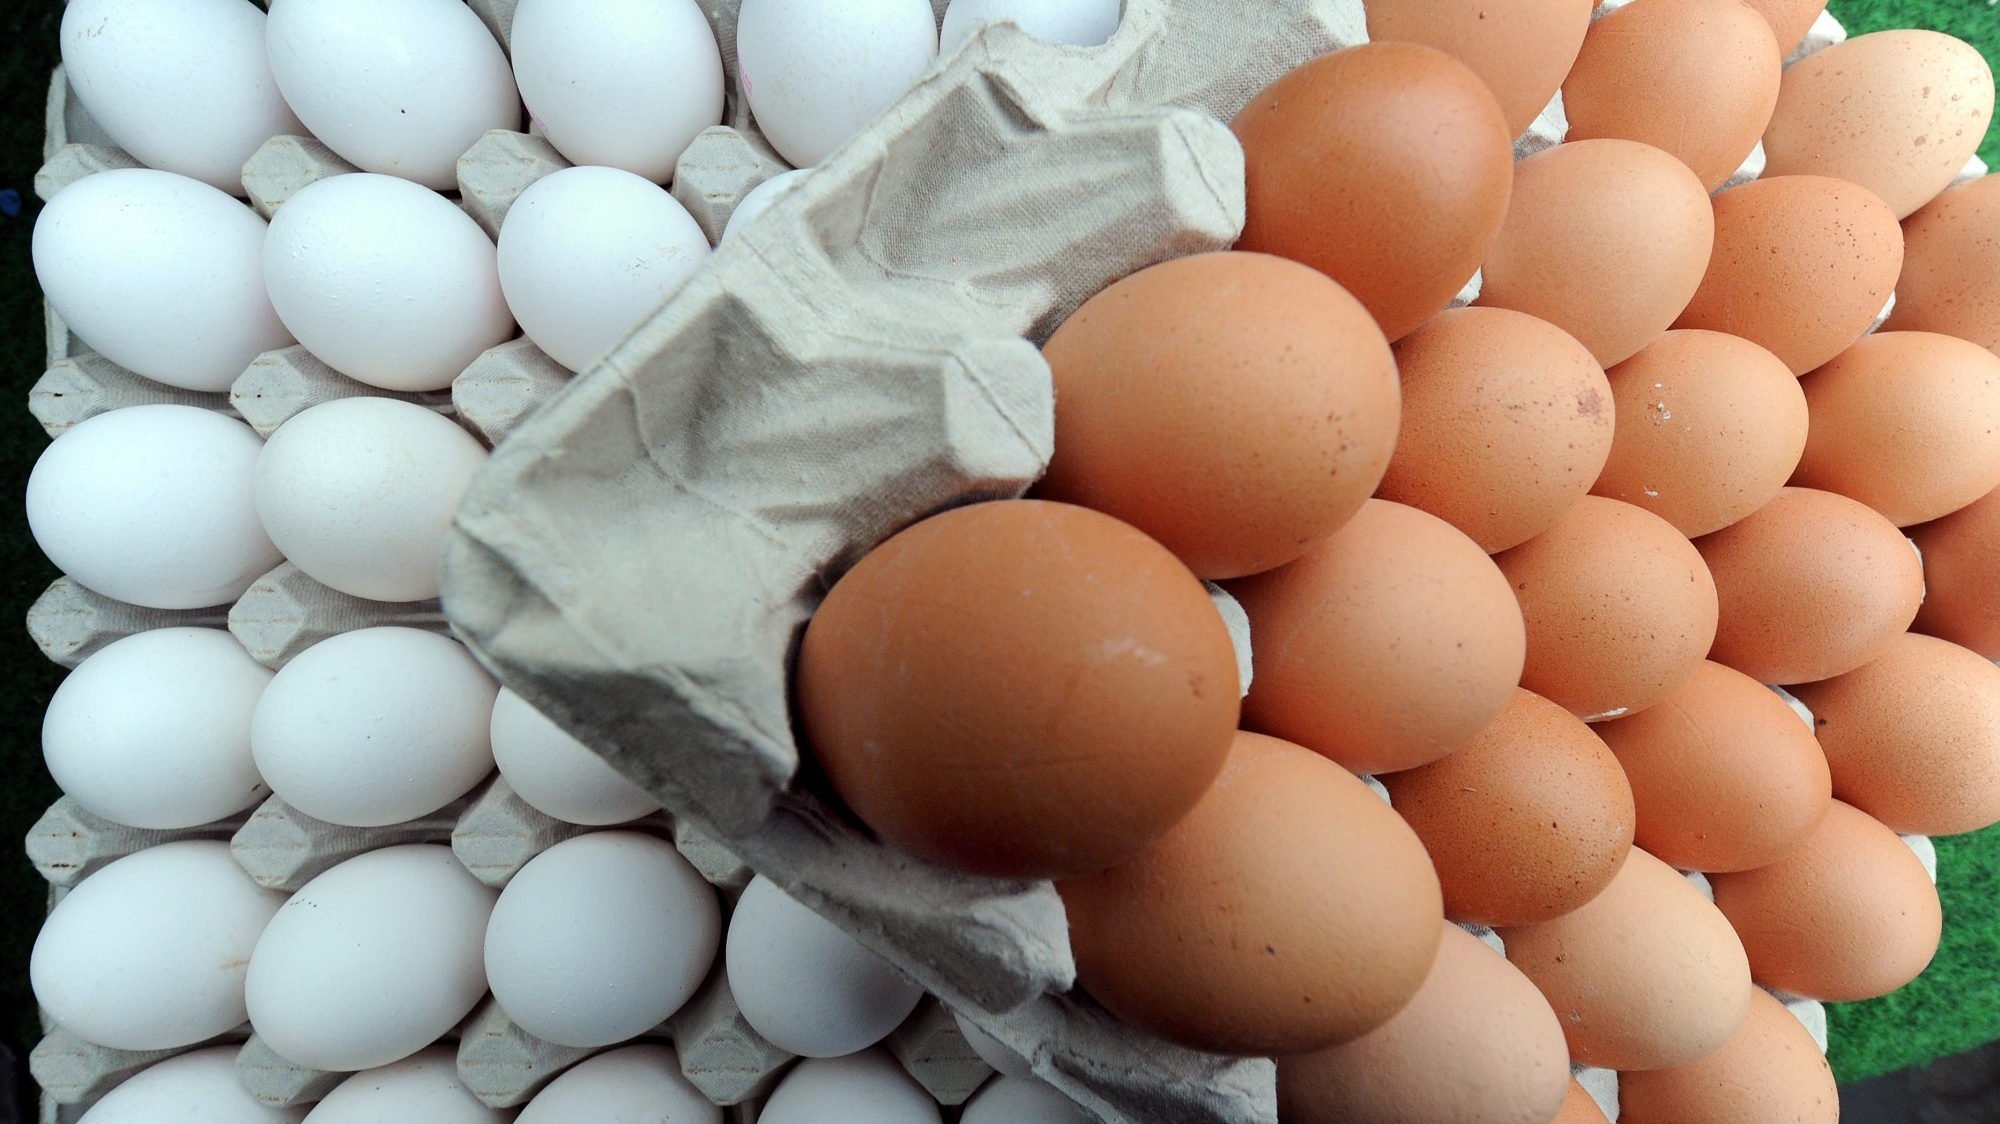 A inspeção da ASAE detetou 240 ovos com validade expirada e 40 kg de alimentos suspeitos de não estarem bons para consumo